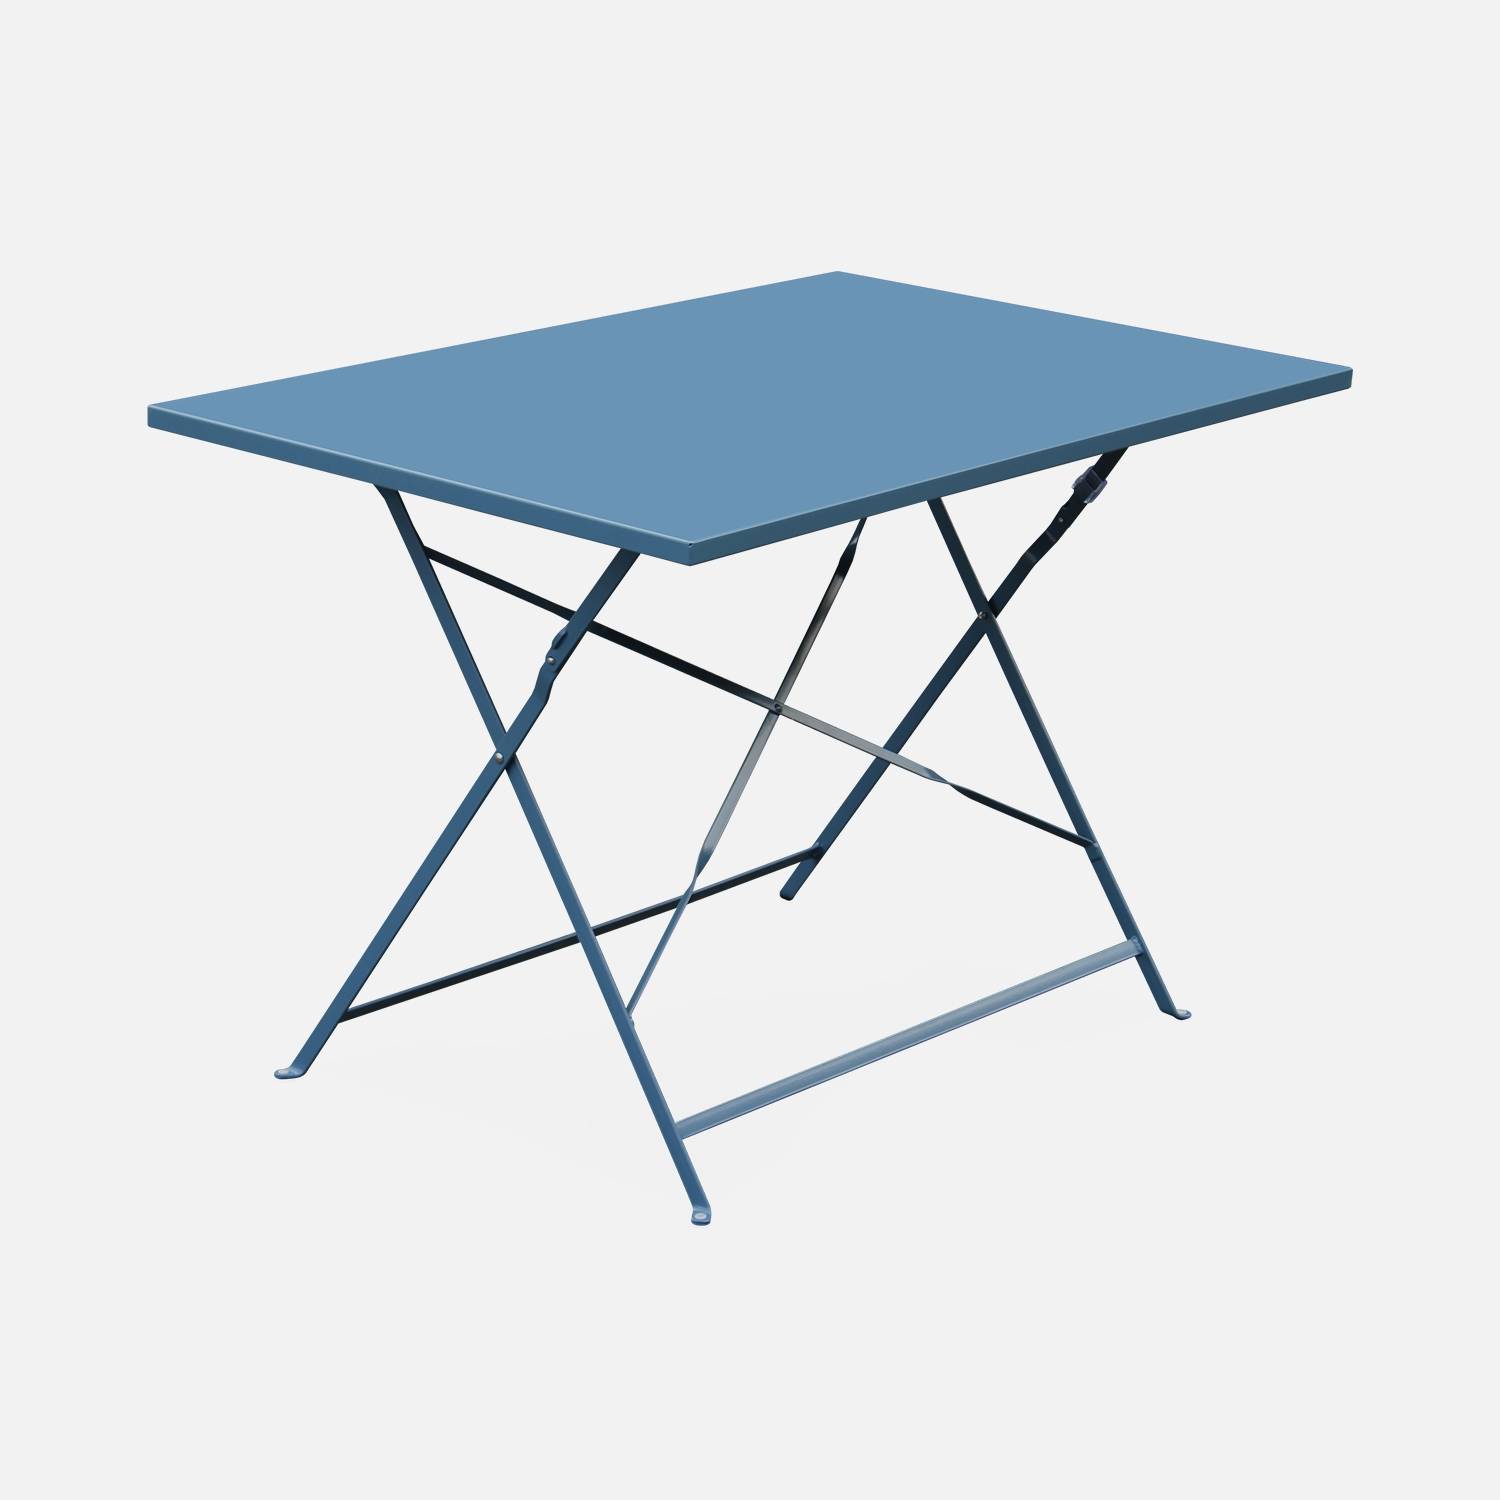 Emilia - Bistro tuintafel opvouwbaar - Rechthoekige tafel 110x70cm van staal met thermolak - Blauwgrijs | sweeek